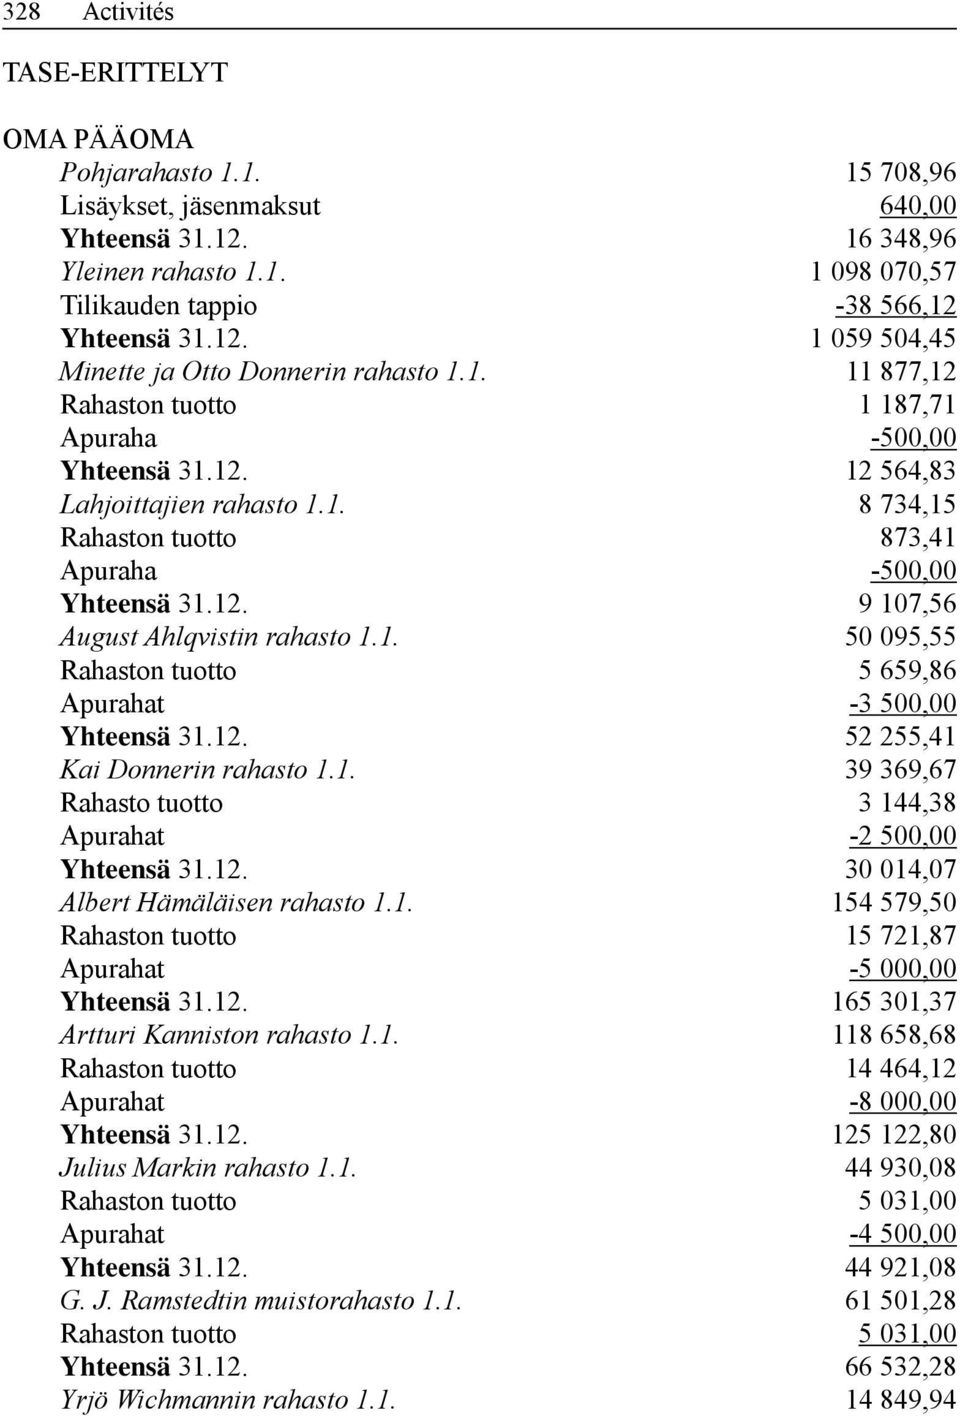 12. 9 107,56 August Ahlqvistin rahasto 1.1. 50 095,55 Rahaston tuotto 5 659,86 Apurahat -3 500,00 Yhteensä 31.12. 52 255,41 Kai Donnerin rahasto 1.1. 39 369,67 Rahasto tuotto 3 144,38 Apurahat -2 500,00 Yhteensä 31.